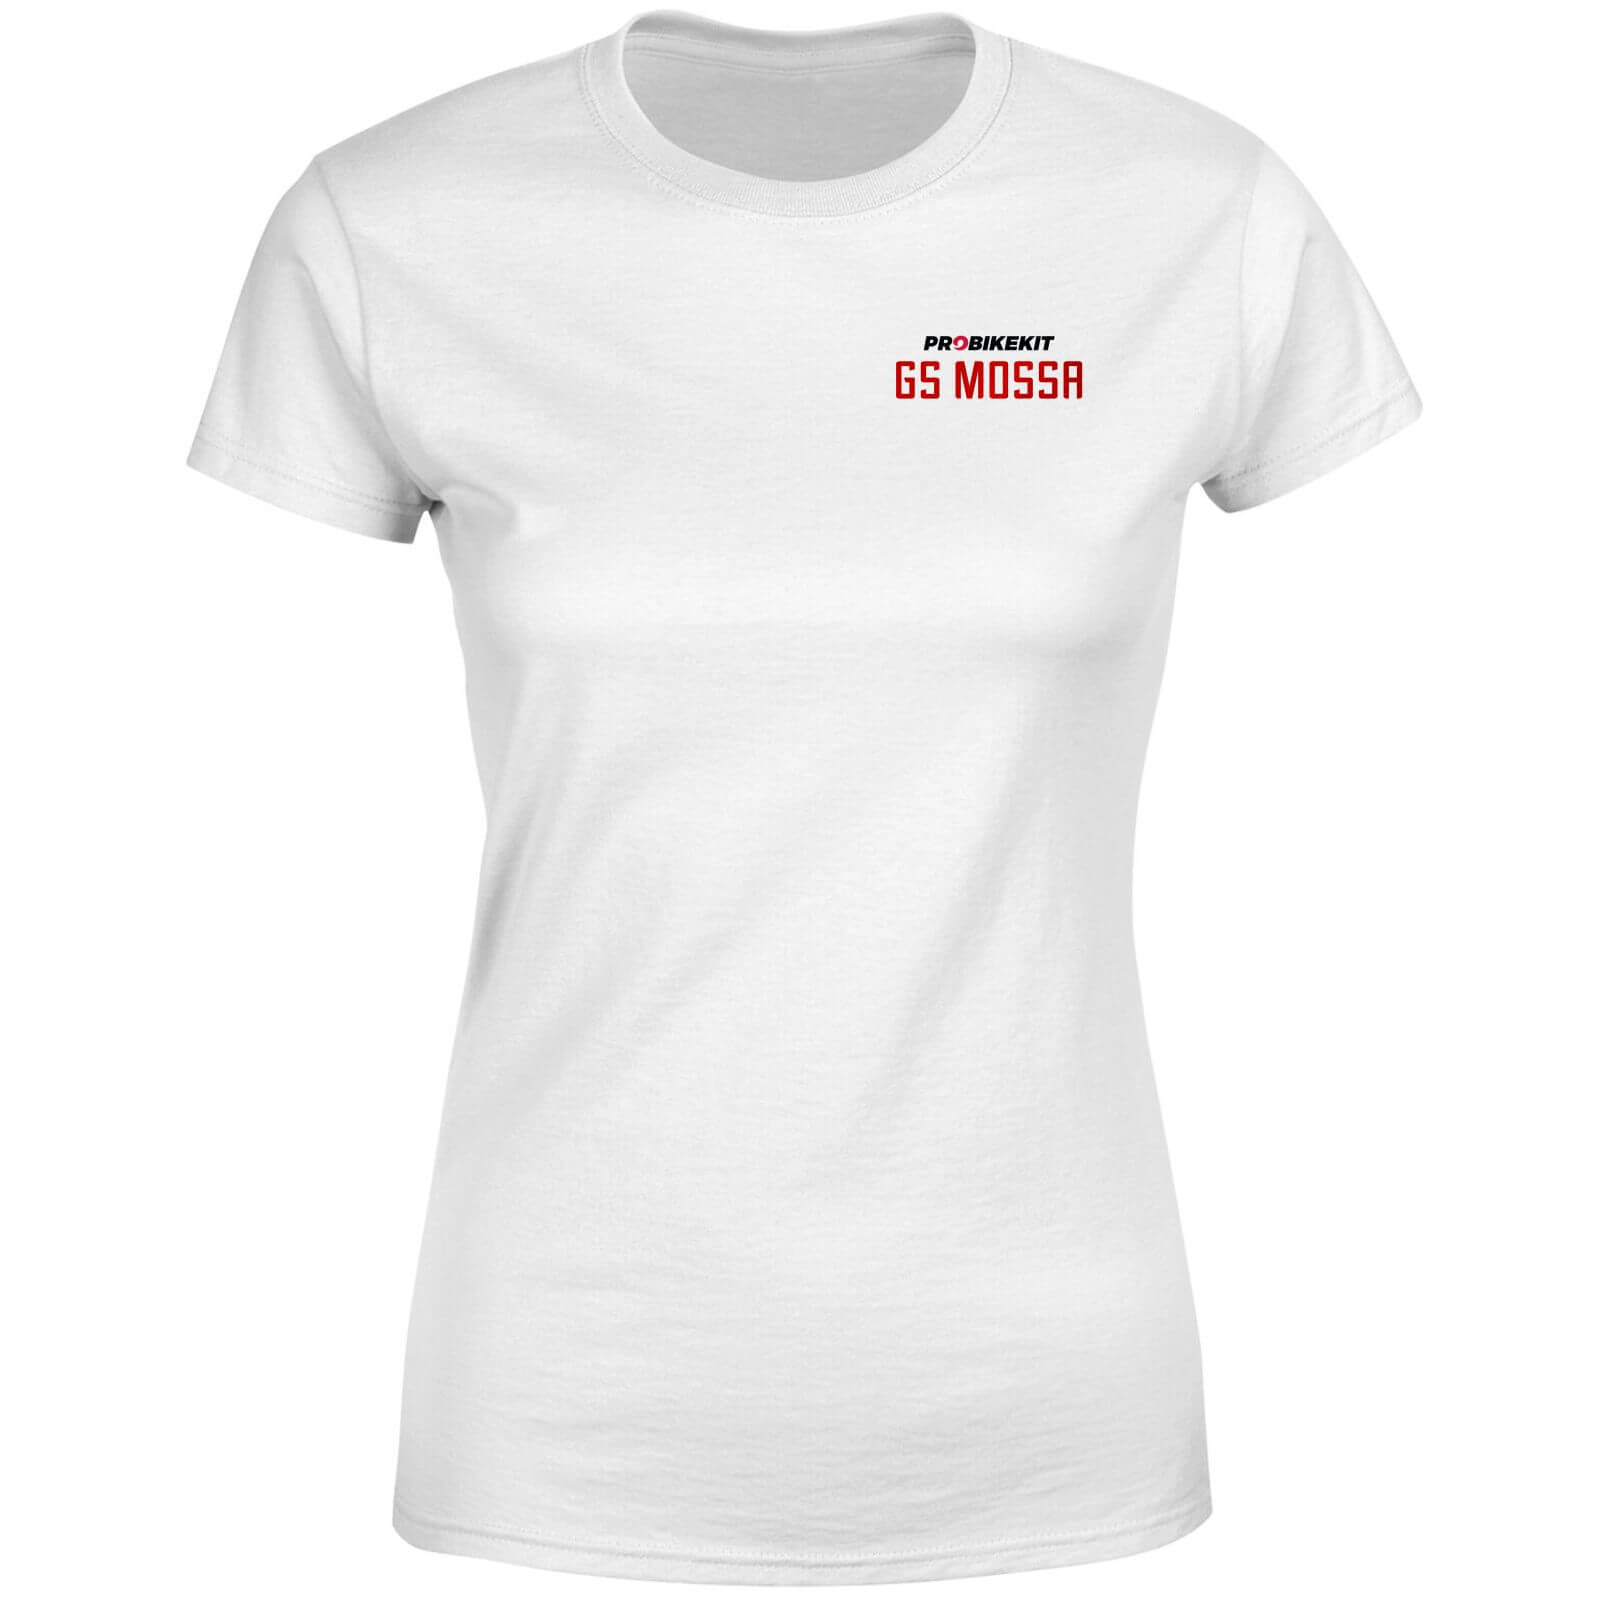 PBK GS Mossa Pocket Print Open Chest Logo Women's T-Shirt - White - L - White